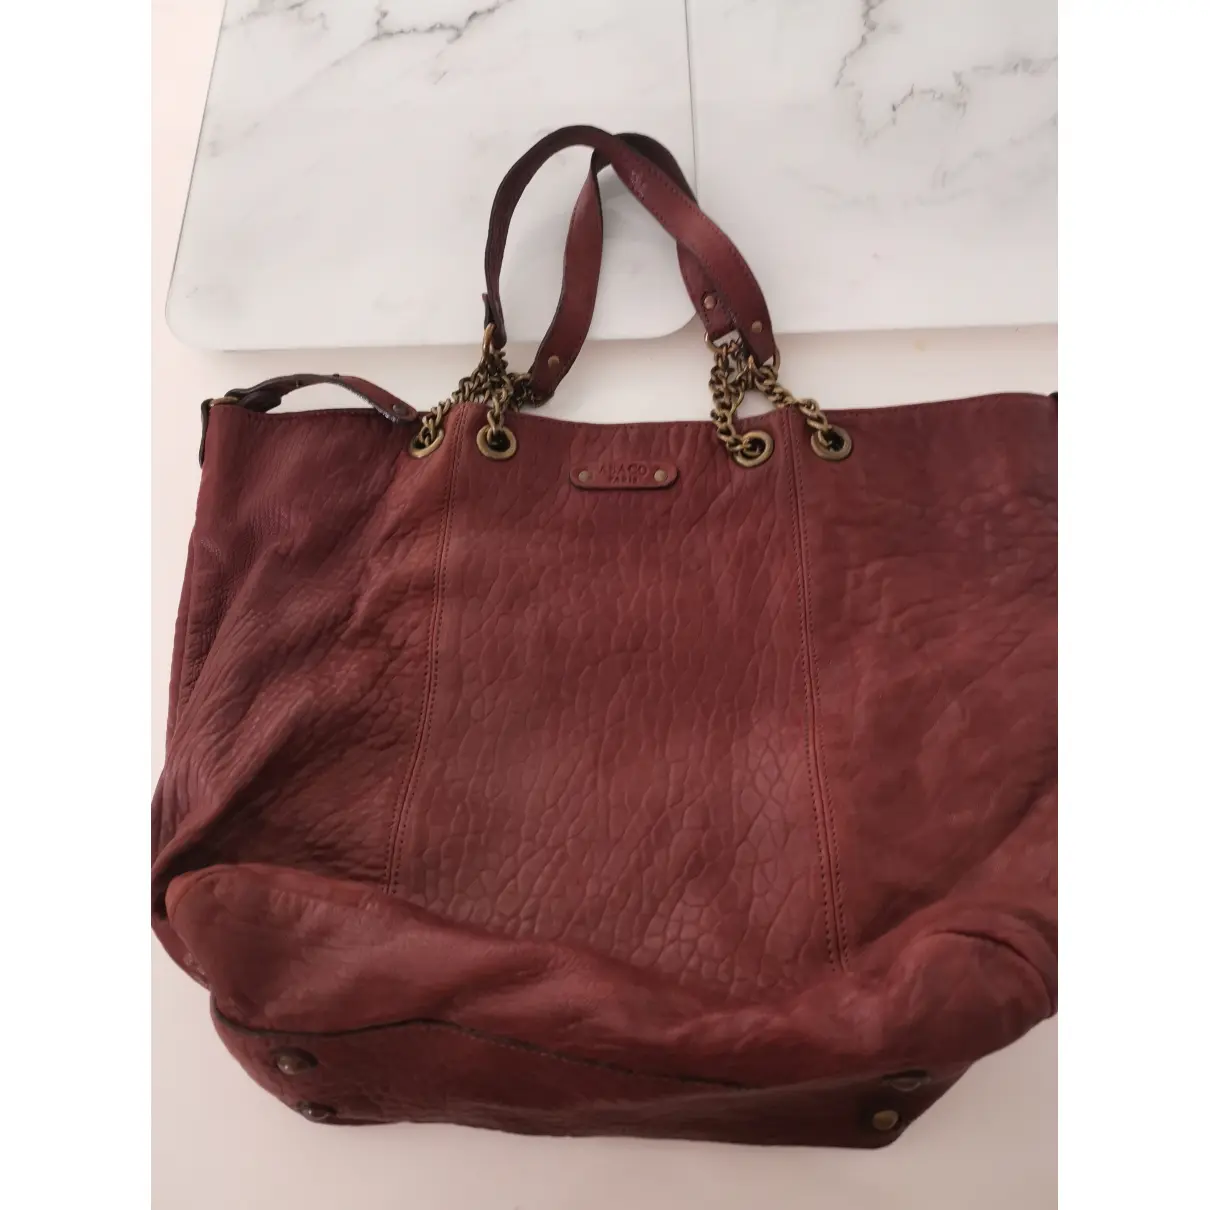 Buy Abaco Leather handbag online